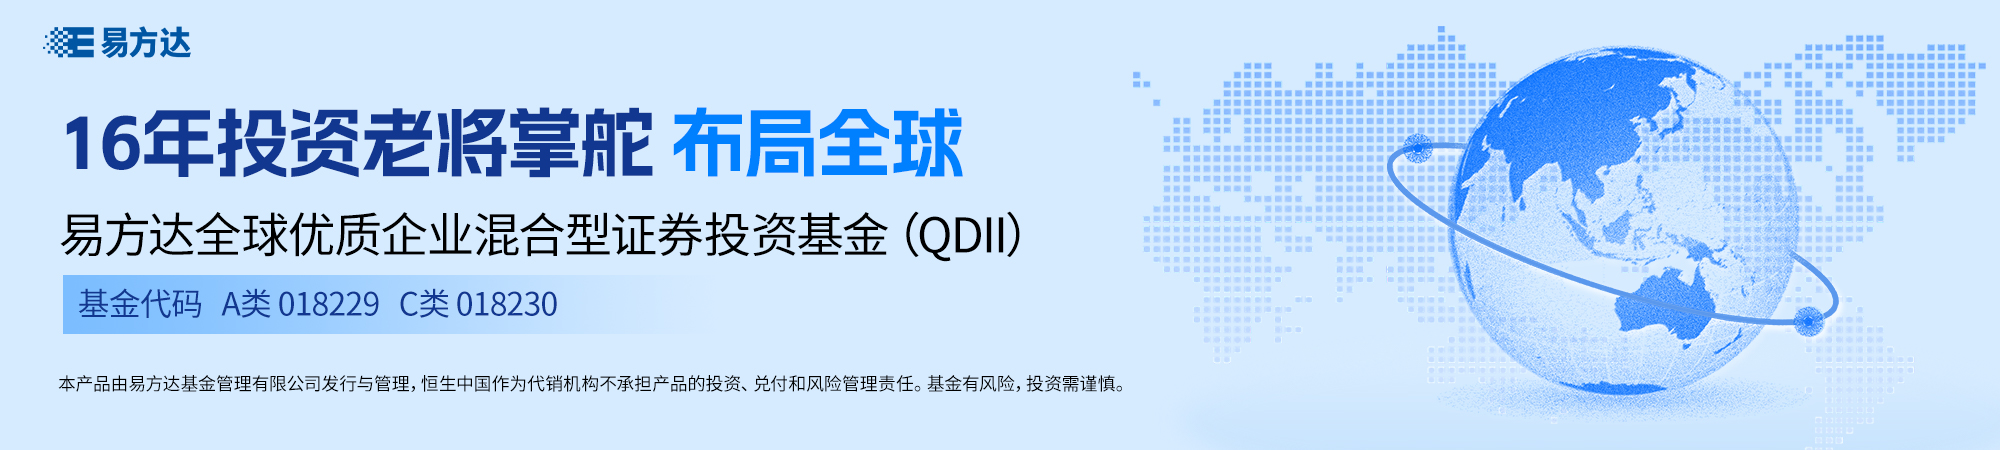 易方达全球优质企业混合证券投资基金(QDII)